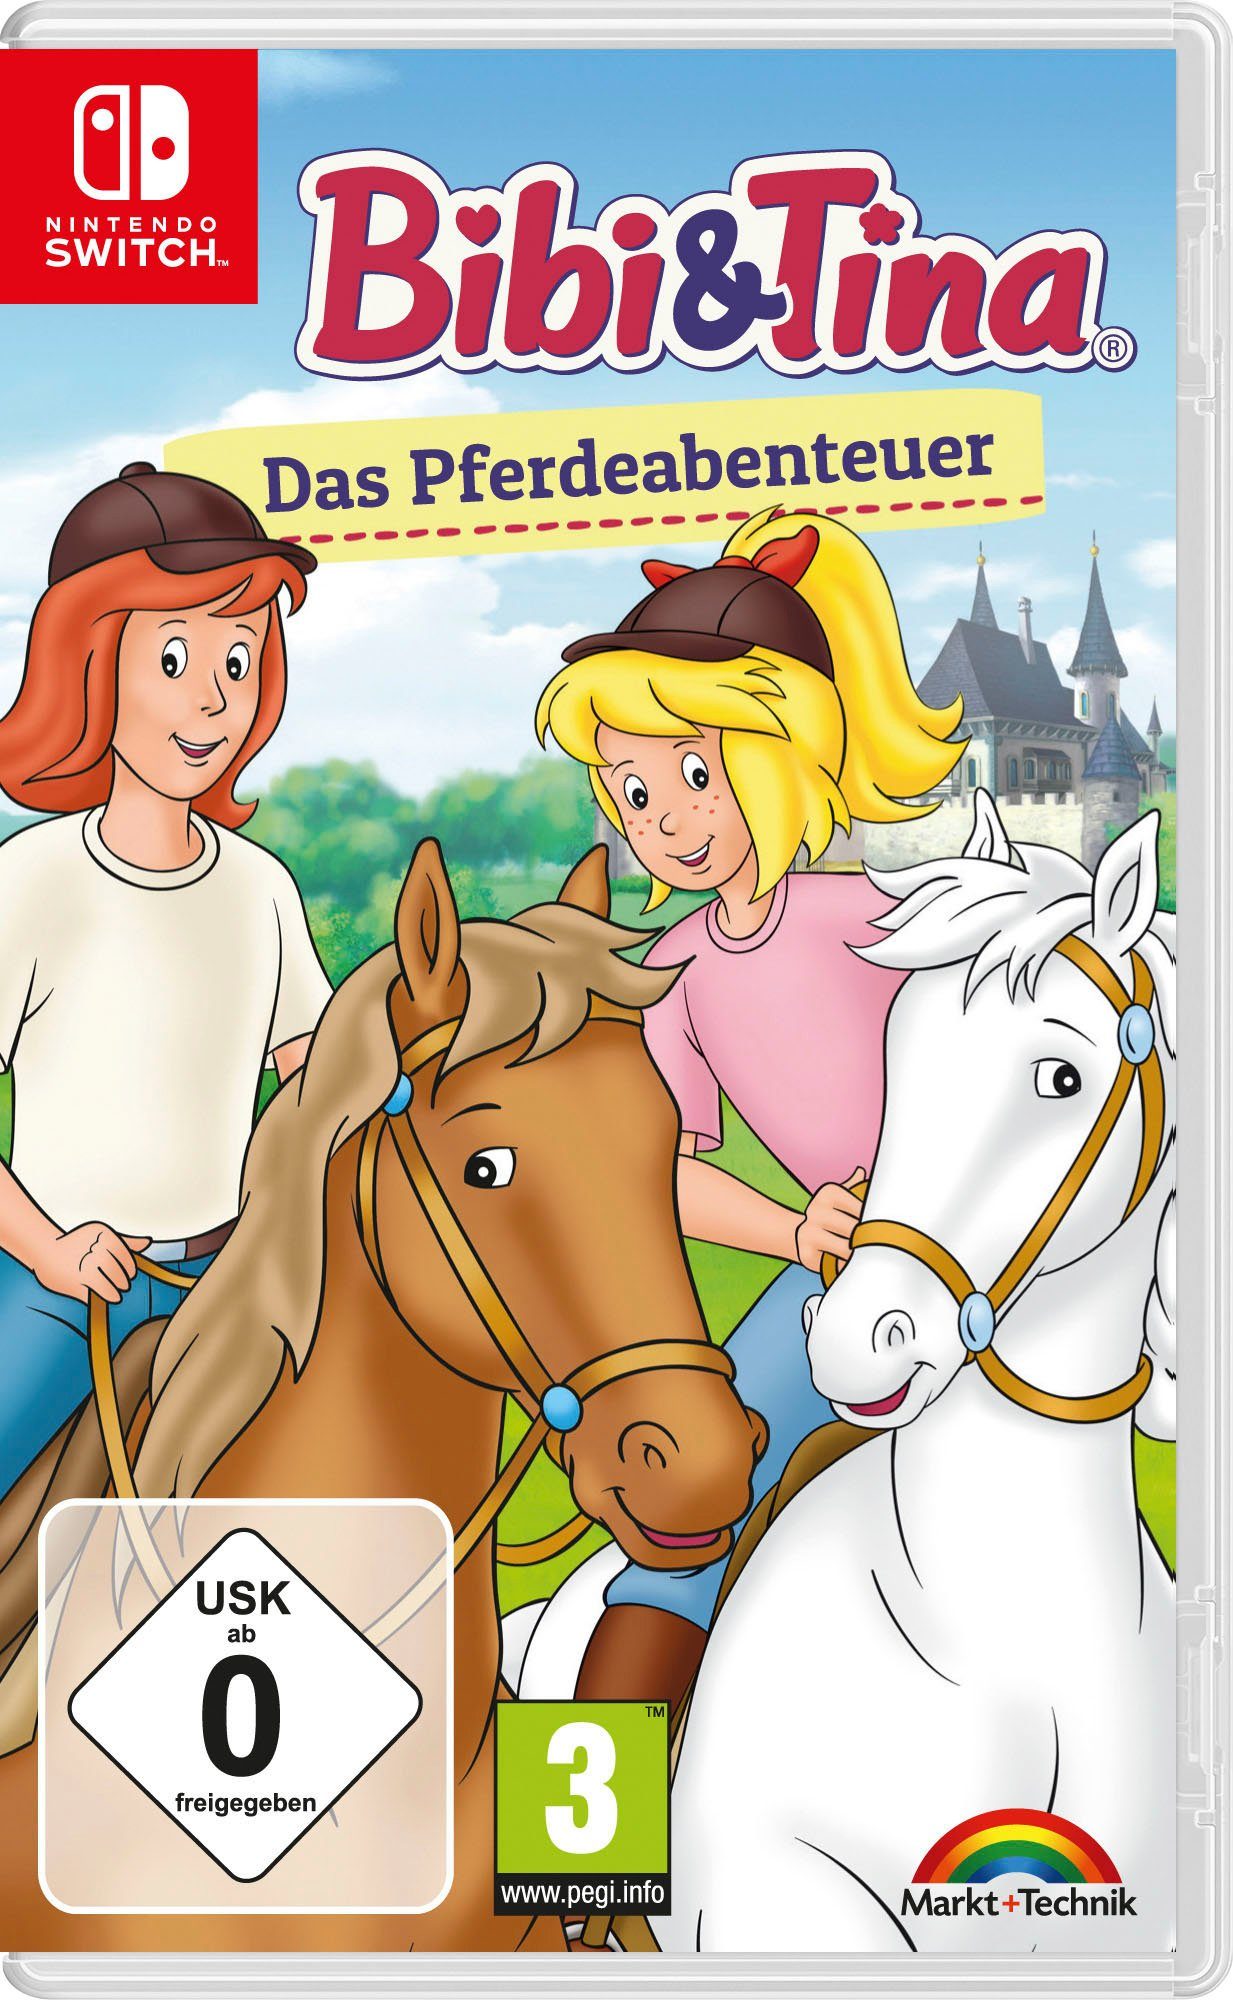 Bibi & Das Schmücken Füttern Striegeln, Tina: vier Nintendo und Pferde-Minigames: tolle Pferdeabenteuer Hufpflege, Spiele Switch